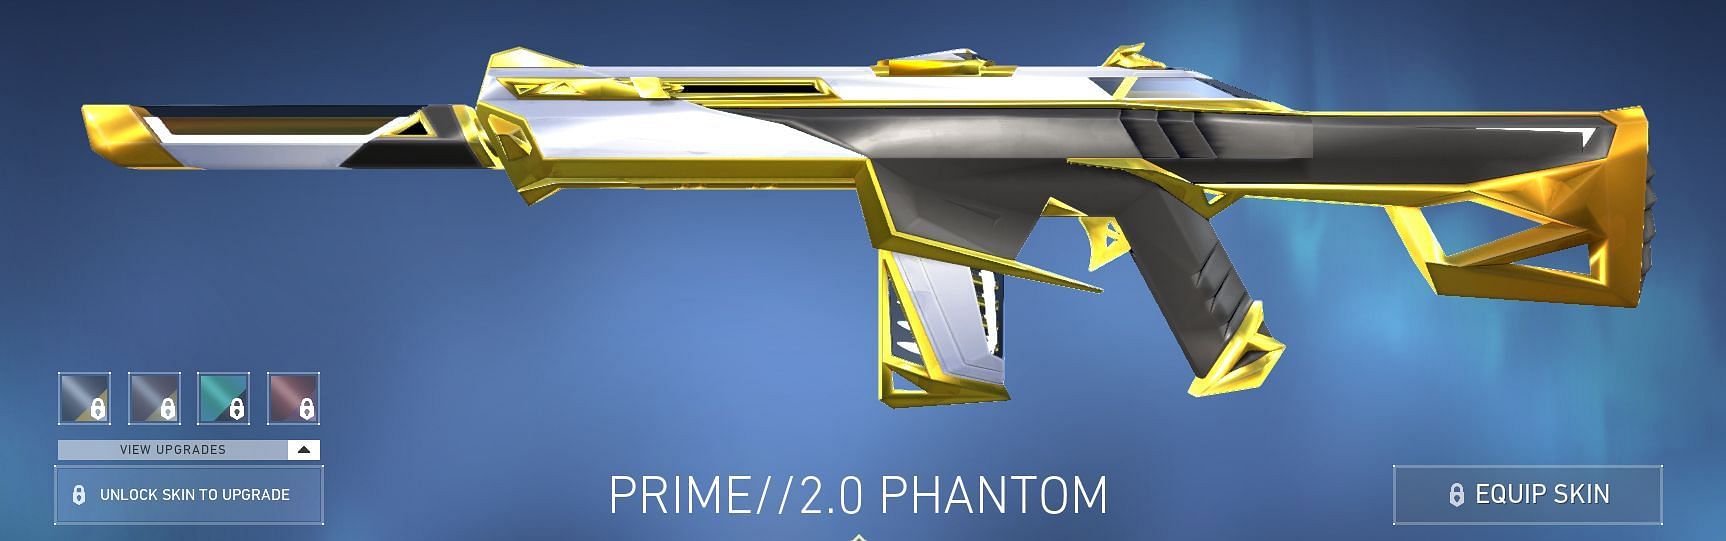 Prime 2.0 Phantom (Image via Riot Games)